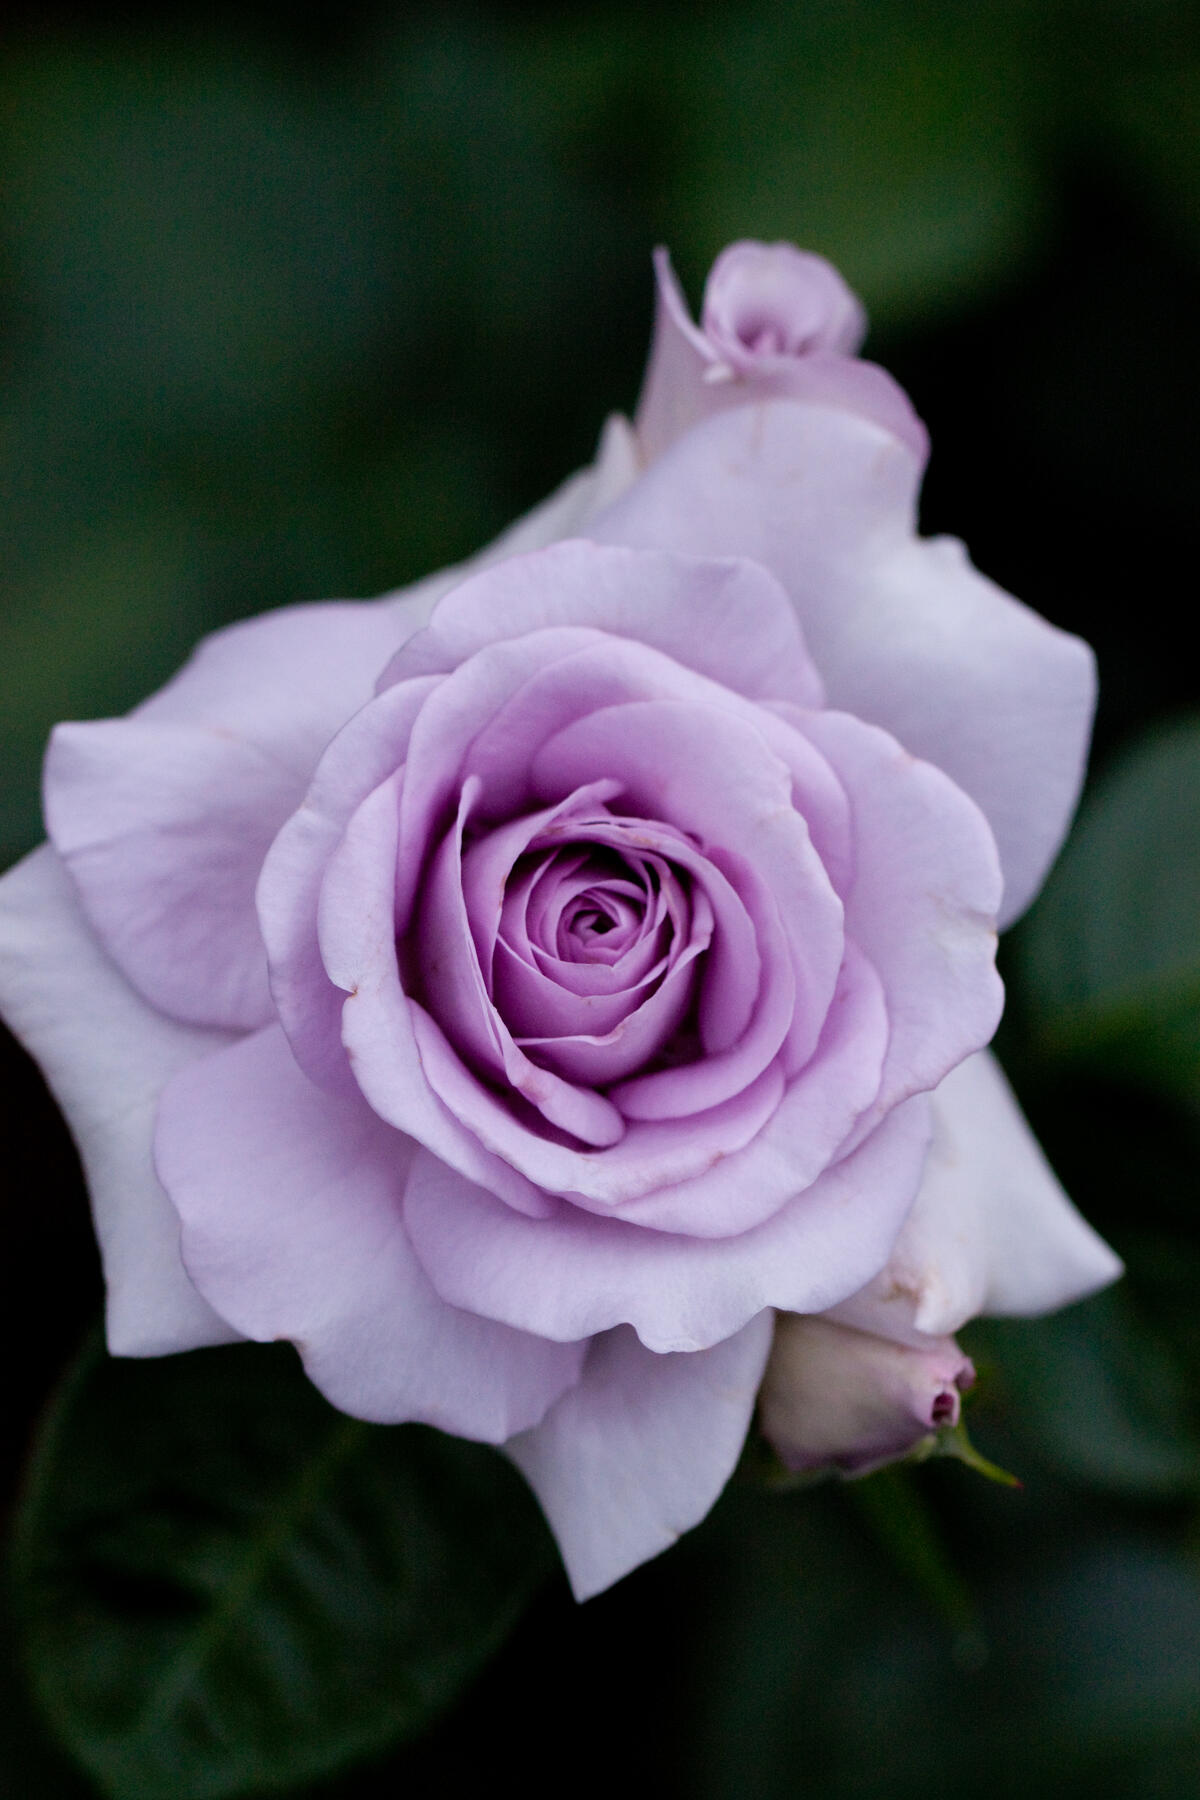 Purple rosebud